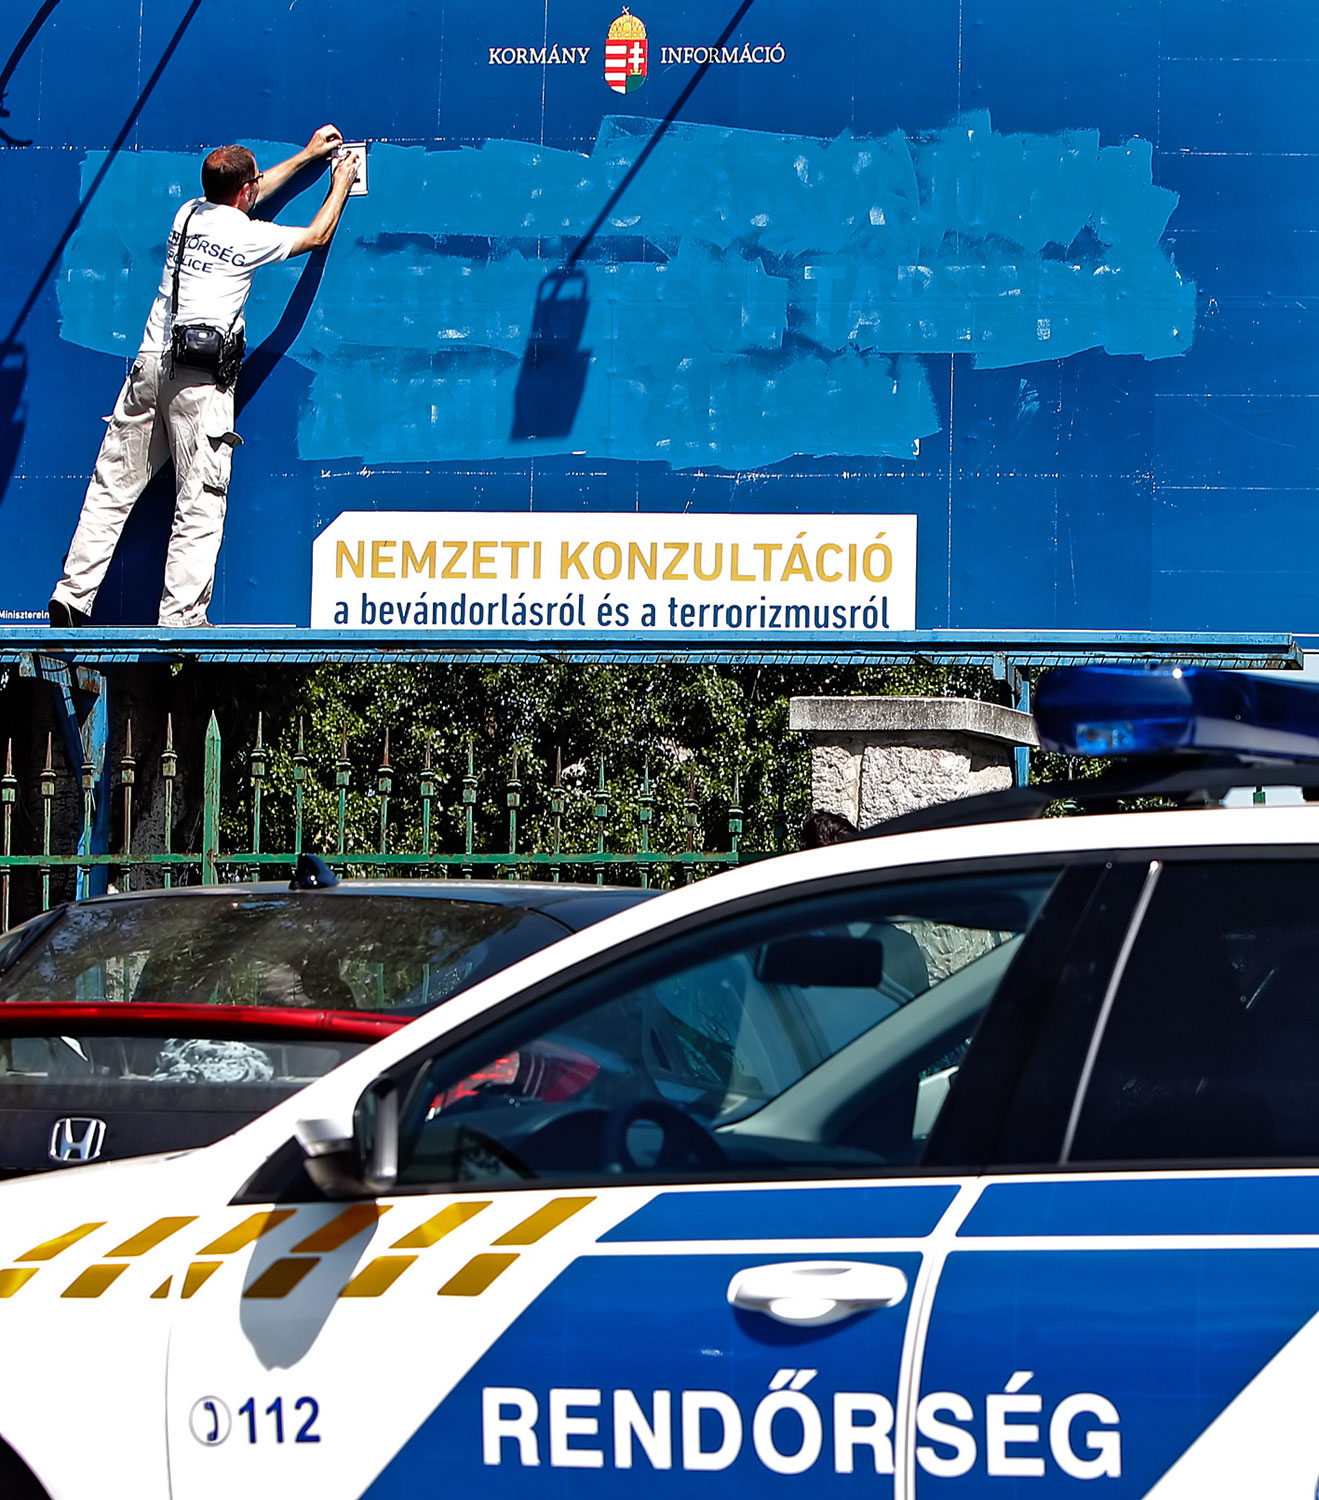 Rendőri helyszínelés az egyik megrongált plakátnál